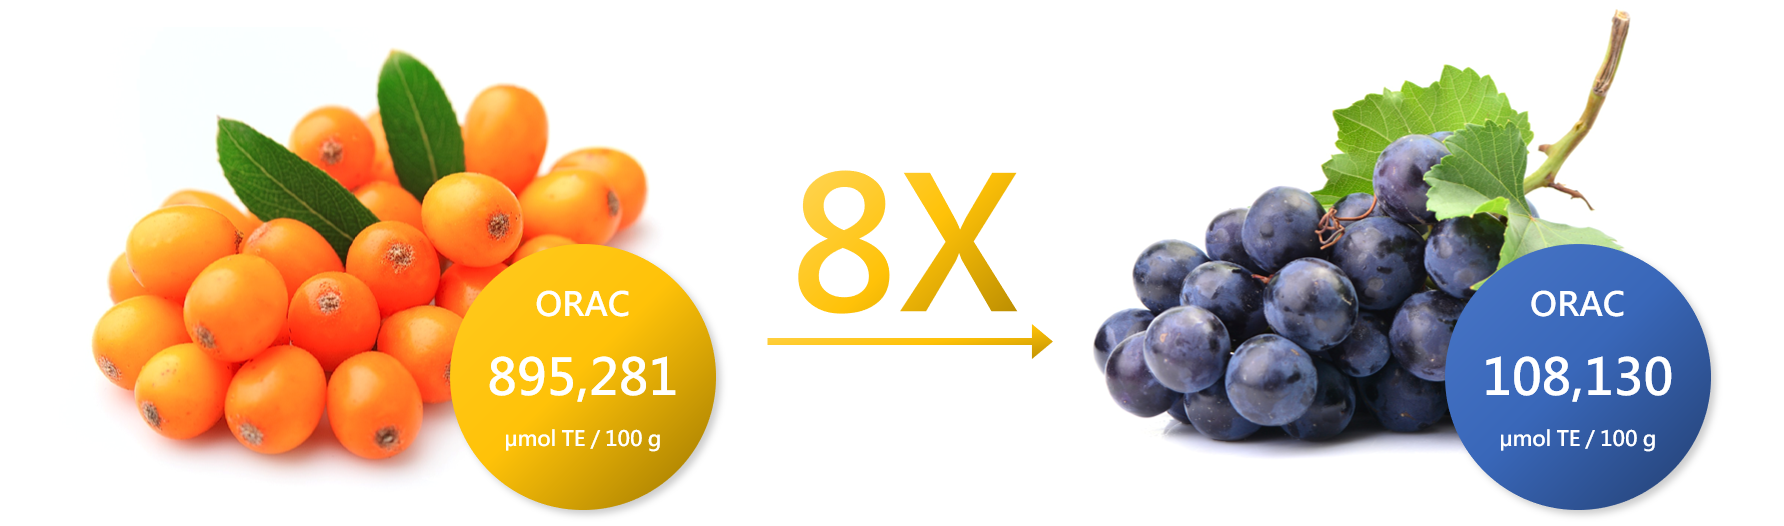 沙棘 萃取物 OPC 的 抗氧化 力為葡萄籽 OPC 的8倍以上